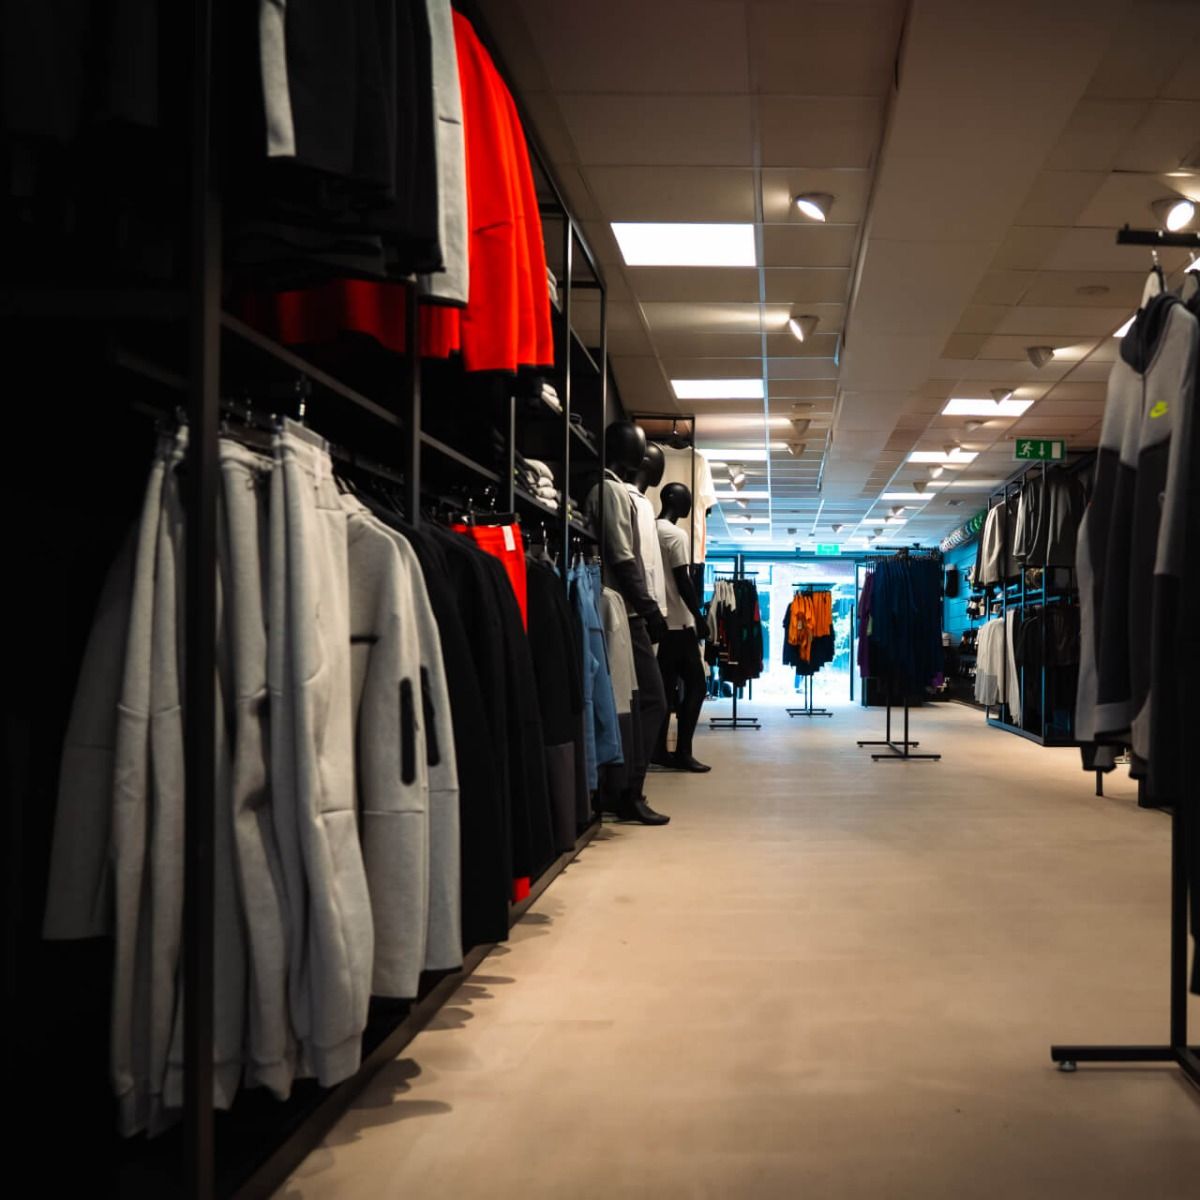 spoelen Graag gedaan Fokken Voebalshop.nl opent gloednieuwe winkel in Alkmaar